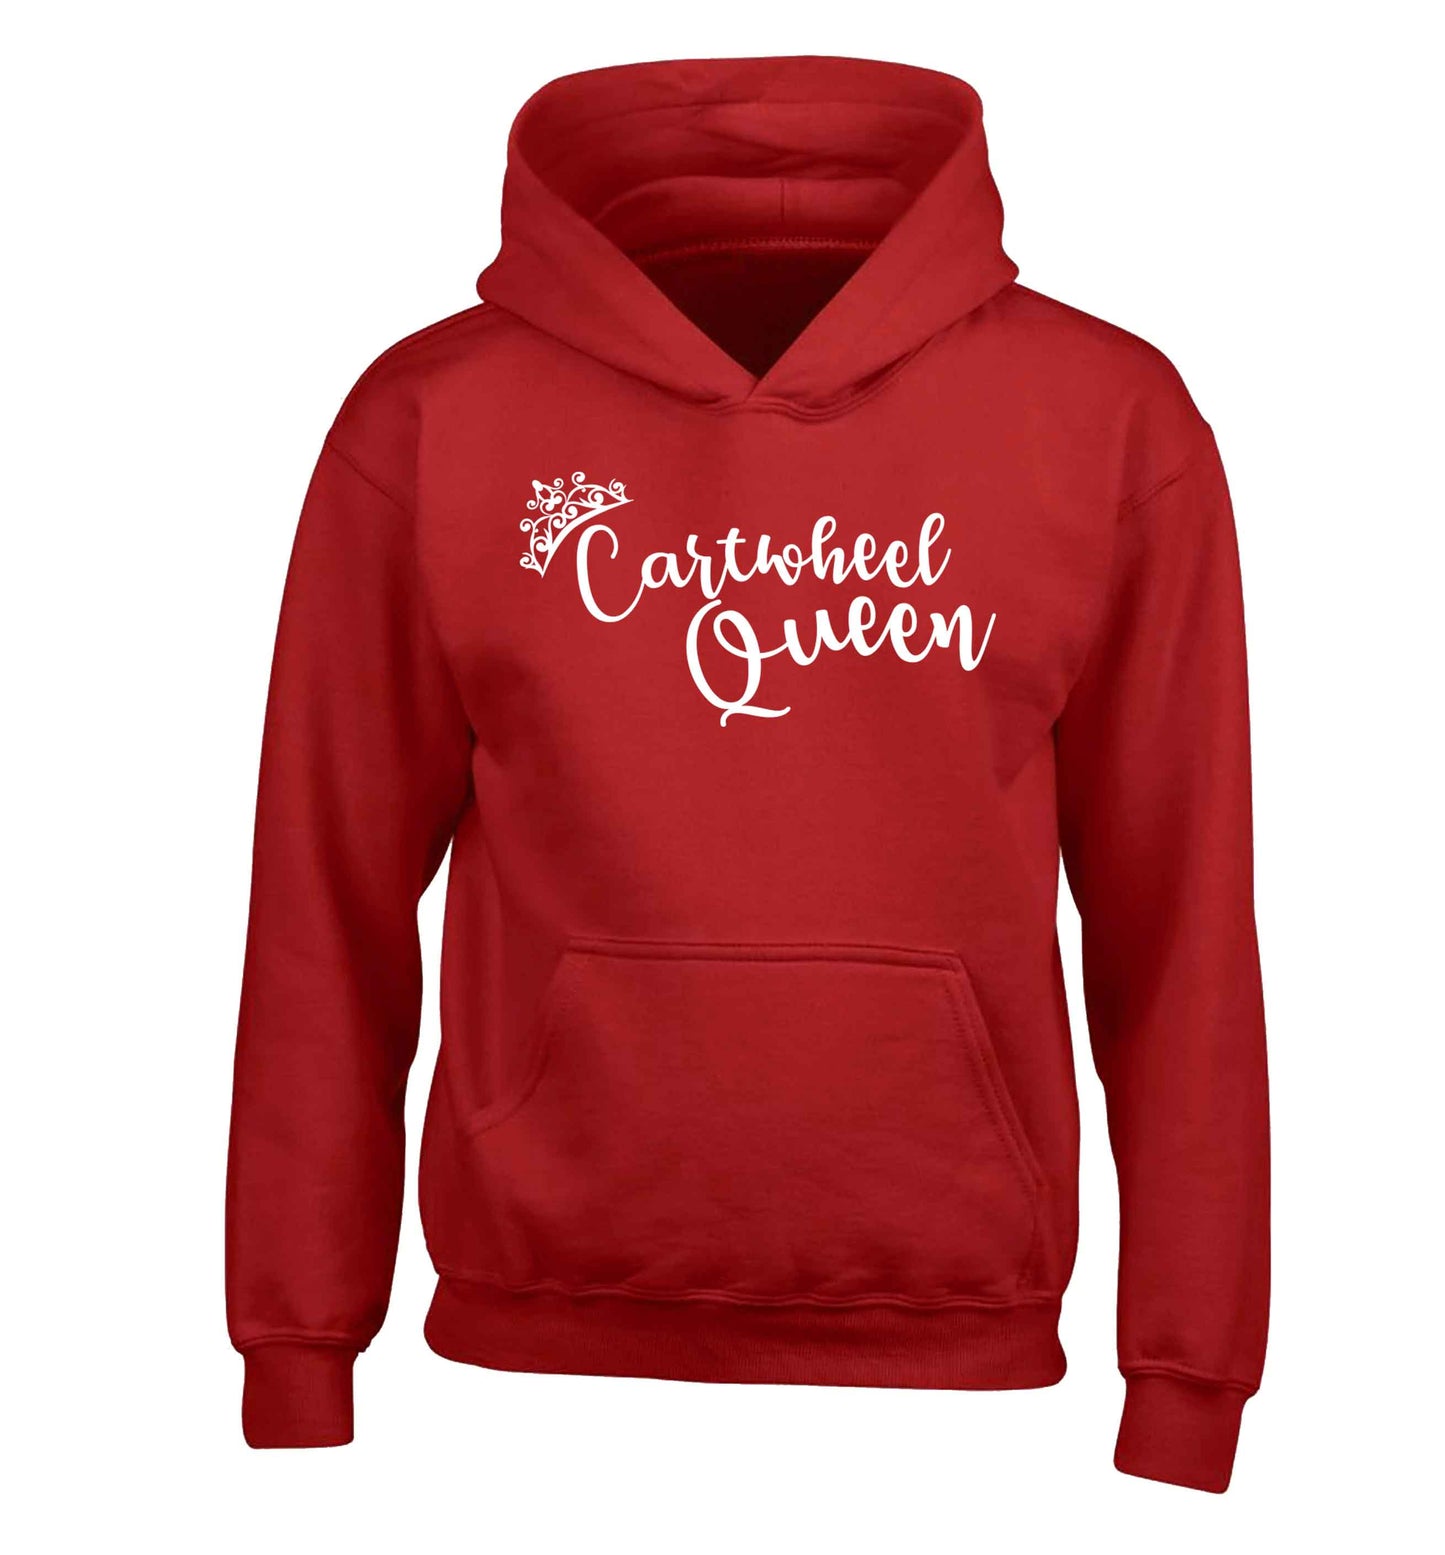 Cartwheel queen children's red hoodie 12-13 Years